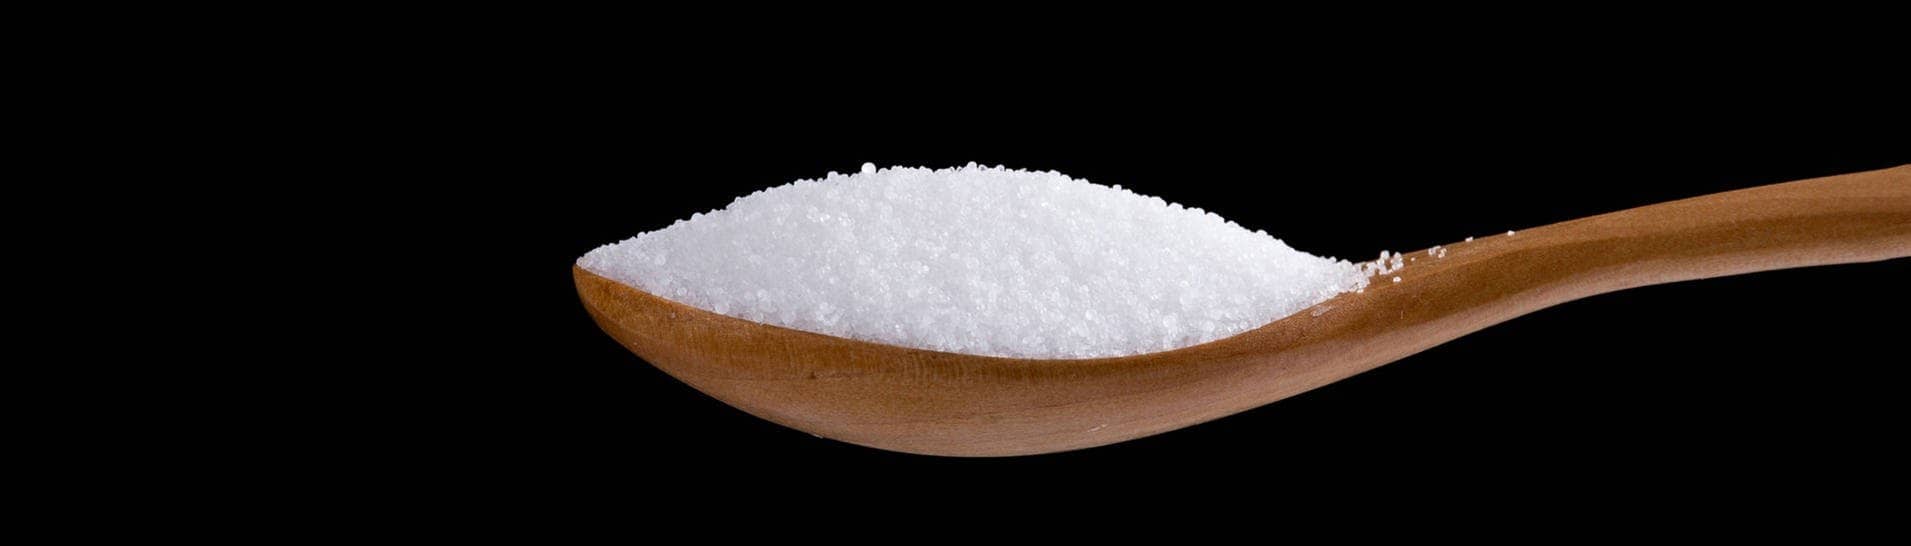 Salz auf einem Löffel, um das sich viele Internet-Mythen ranken (Foto: IMAGO, Imaginechina-Tuchong)